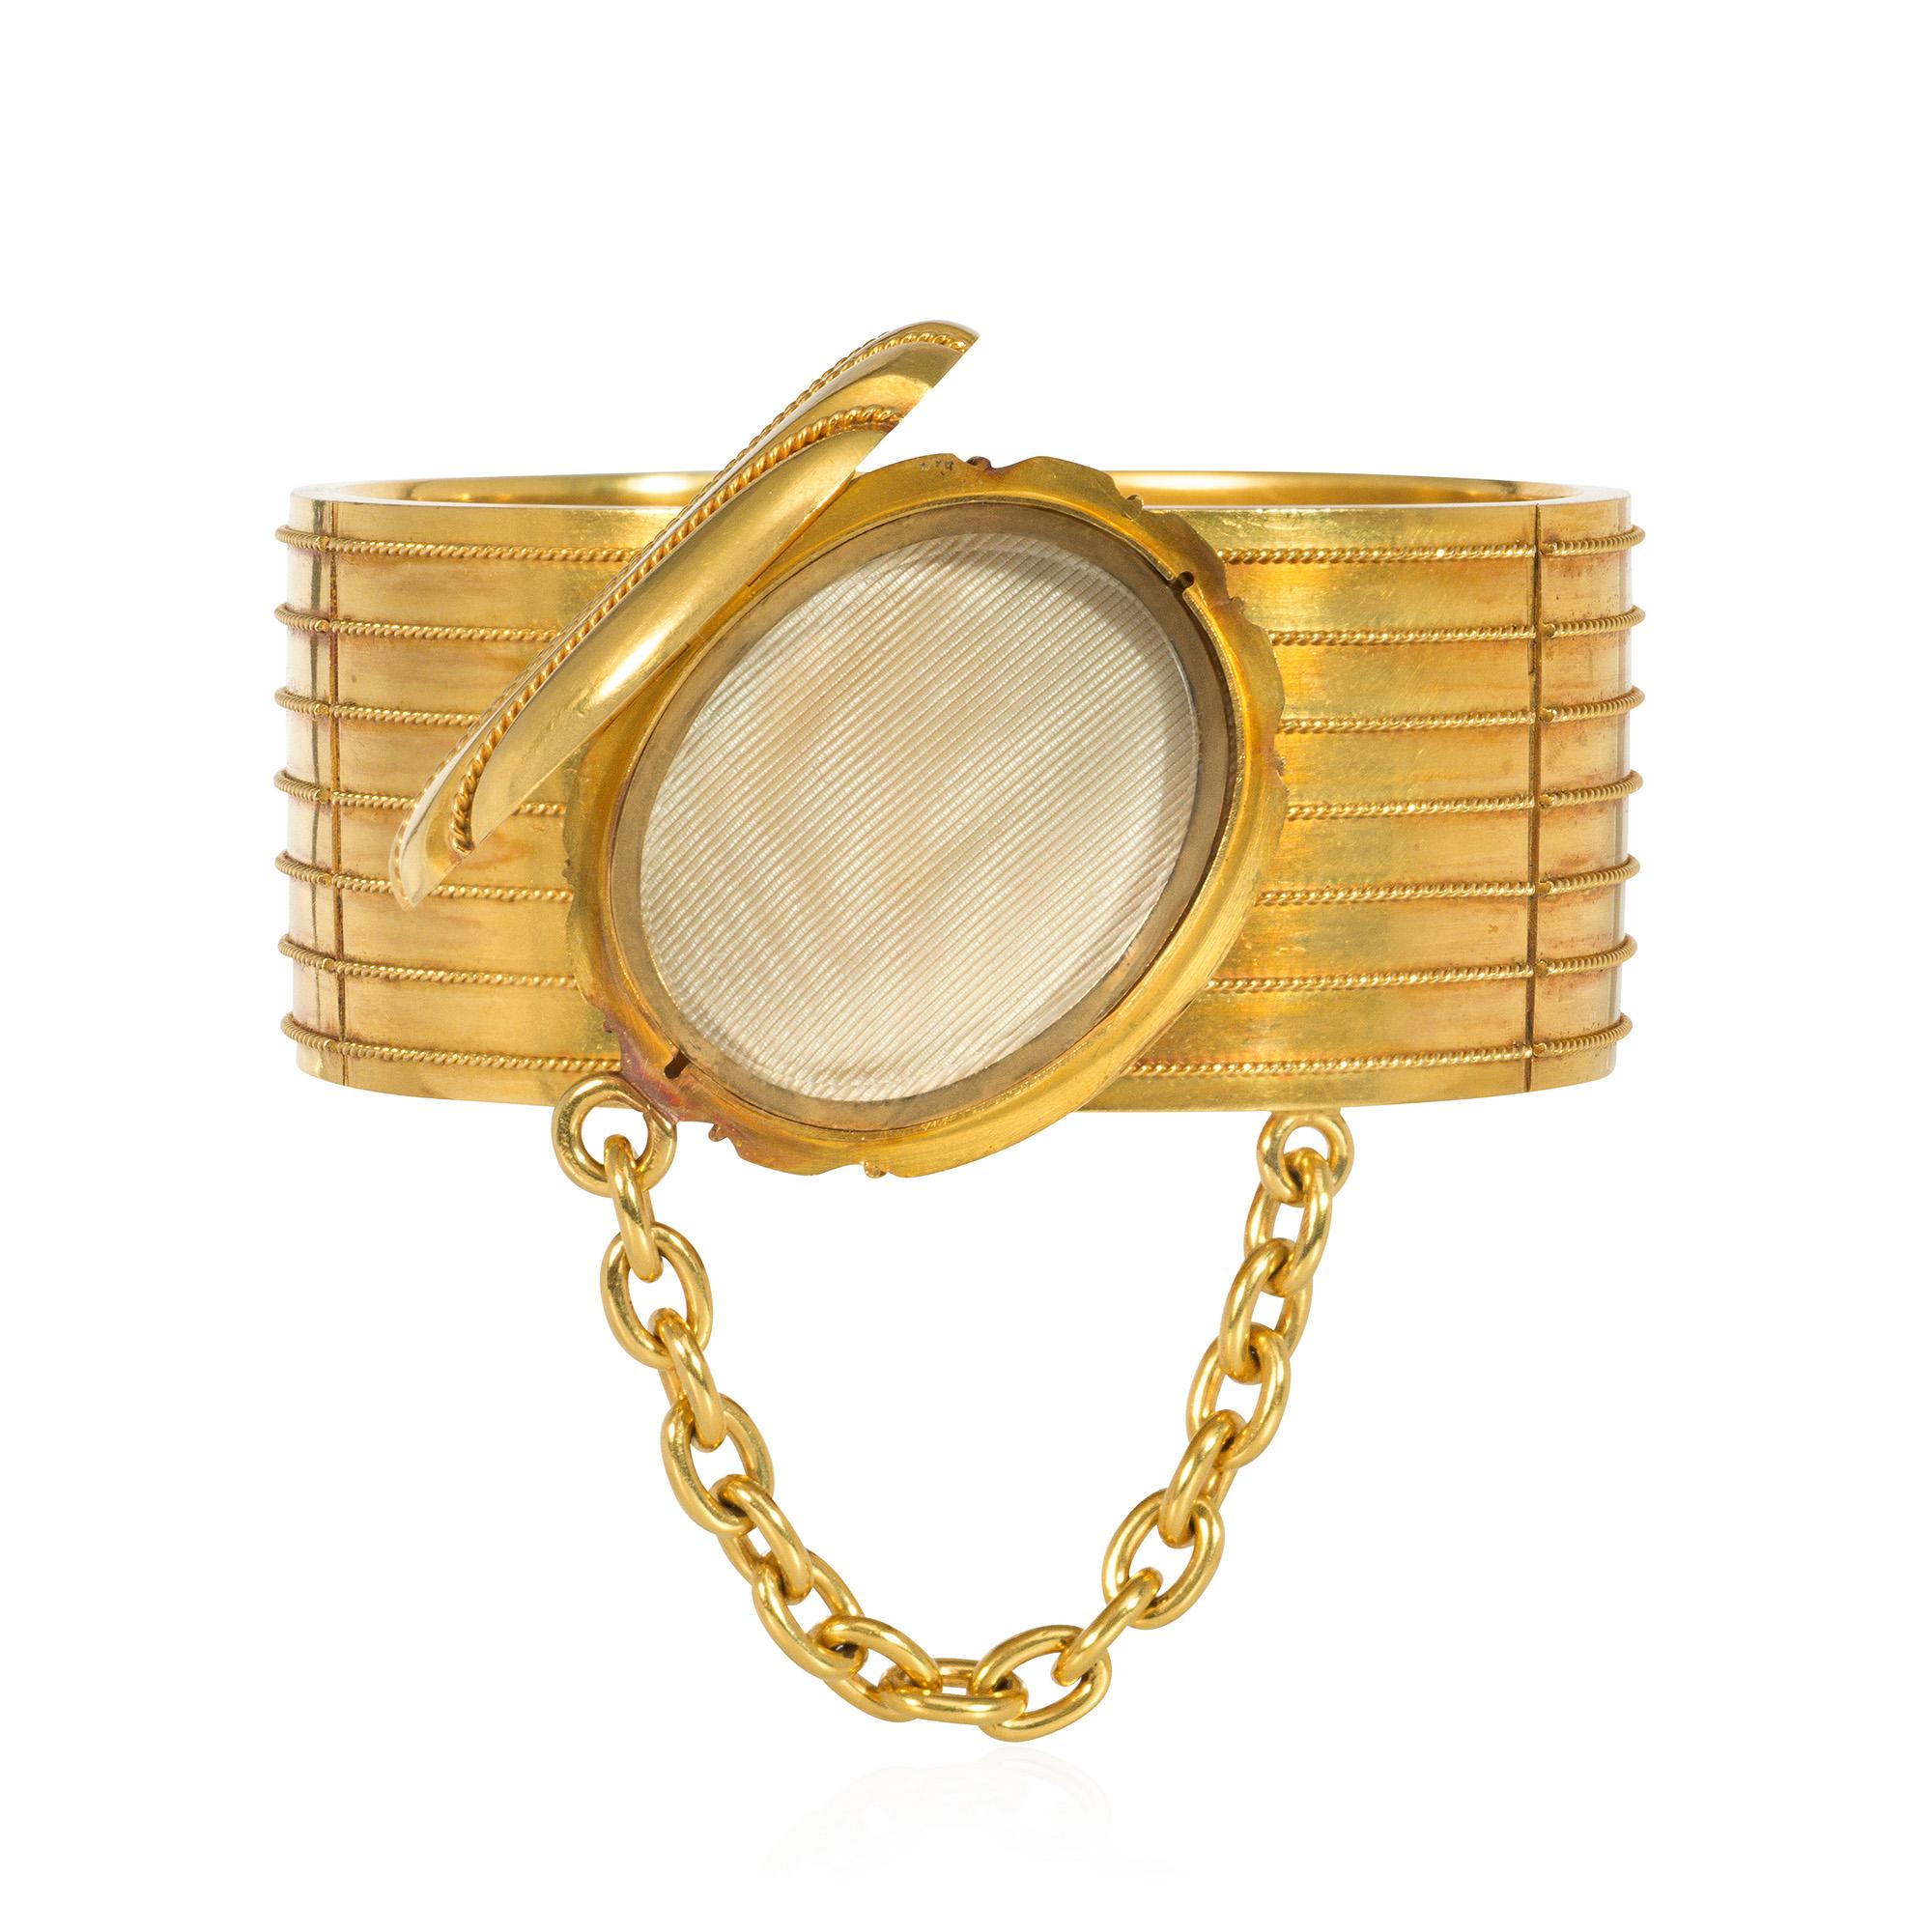 Ein viktorianisches Goldarmband mit appliziertem Drahtgeflecht und einem geriffelten, doppelseitigen ovalen Medaillonbuckel mit einer Kette, in 18k.
6 3/4